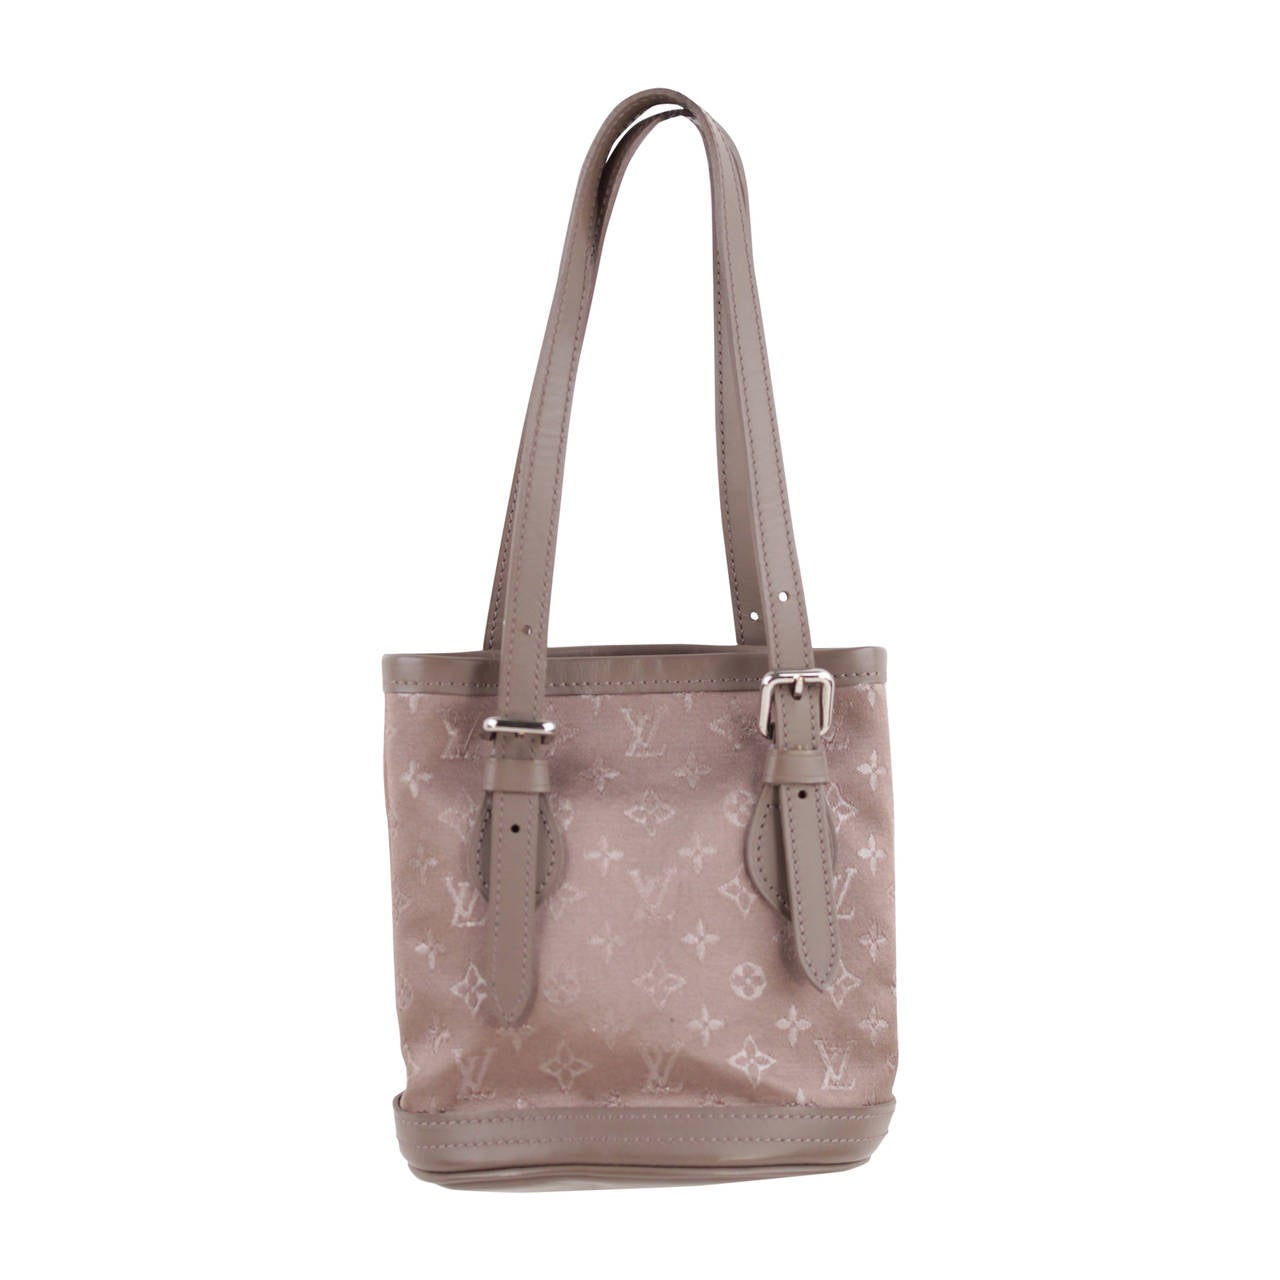 LOUIS VUITTON Taupe MONOGRAM SATIN Micro MINI BUCKET BAG Little Handbag PURSE SA For Sale at 1stdibs